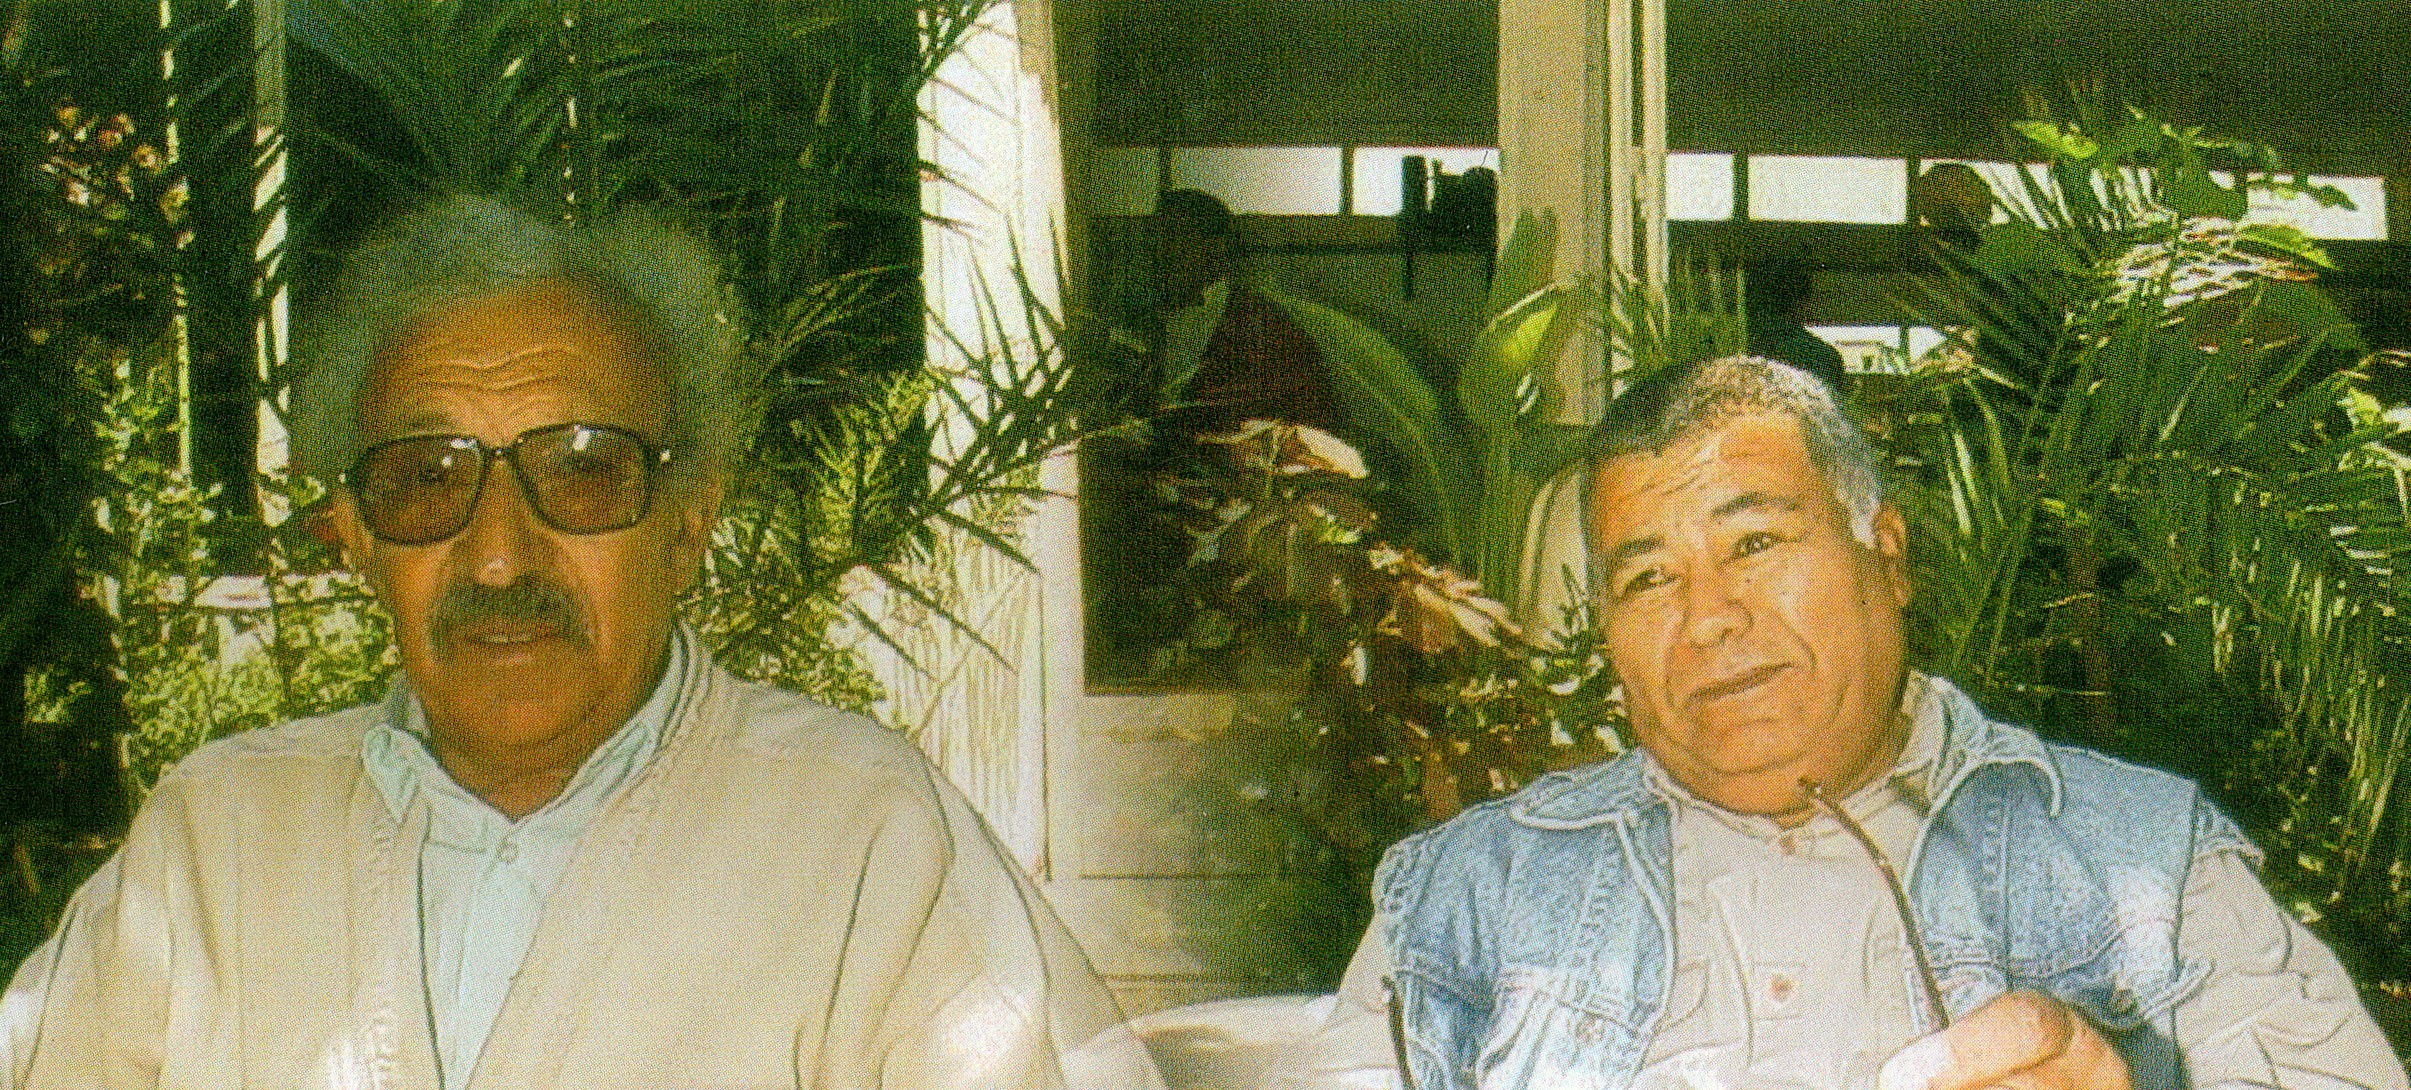 Mohammed Ben Abdeslam en 1993 avec l’un de ses grands complices , le parolier émérite Ali Haddani.